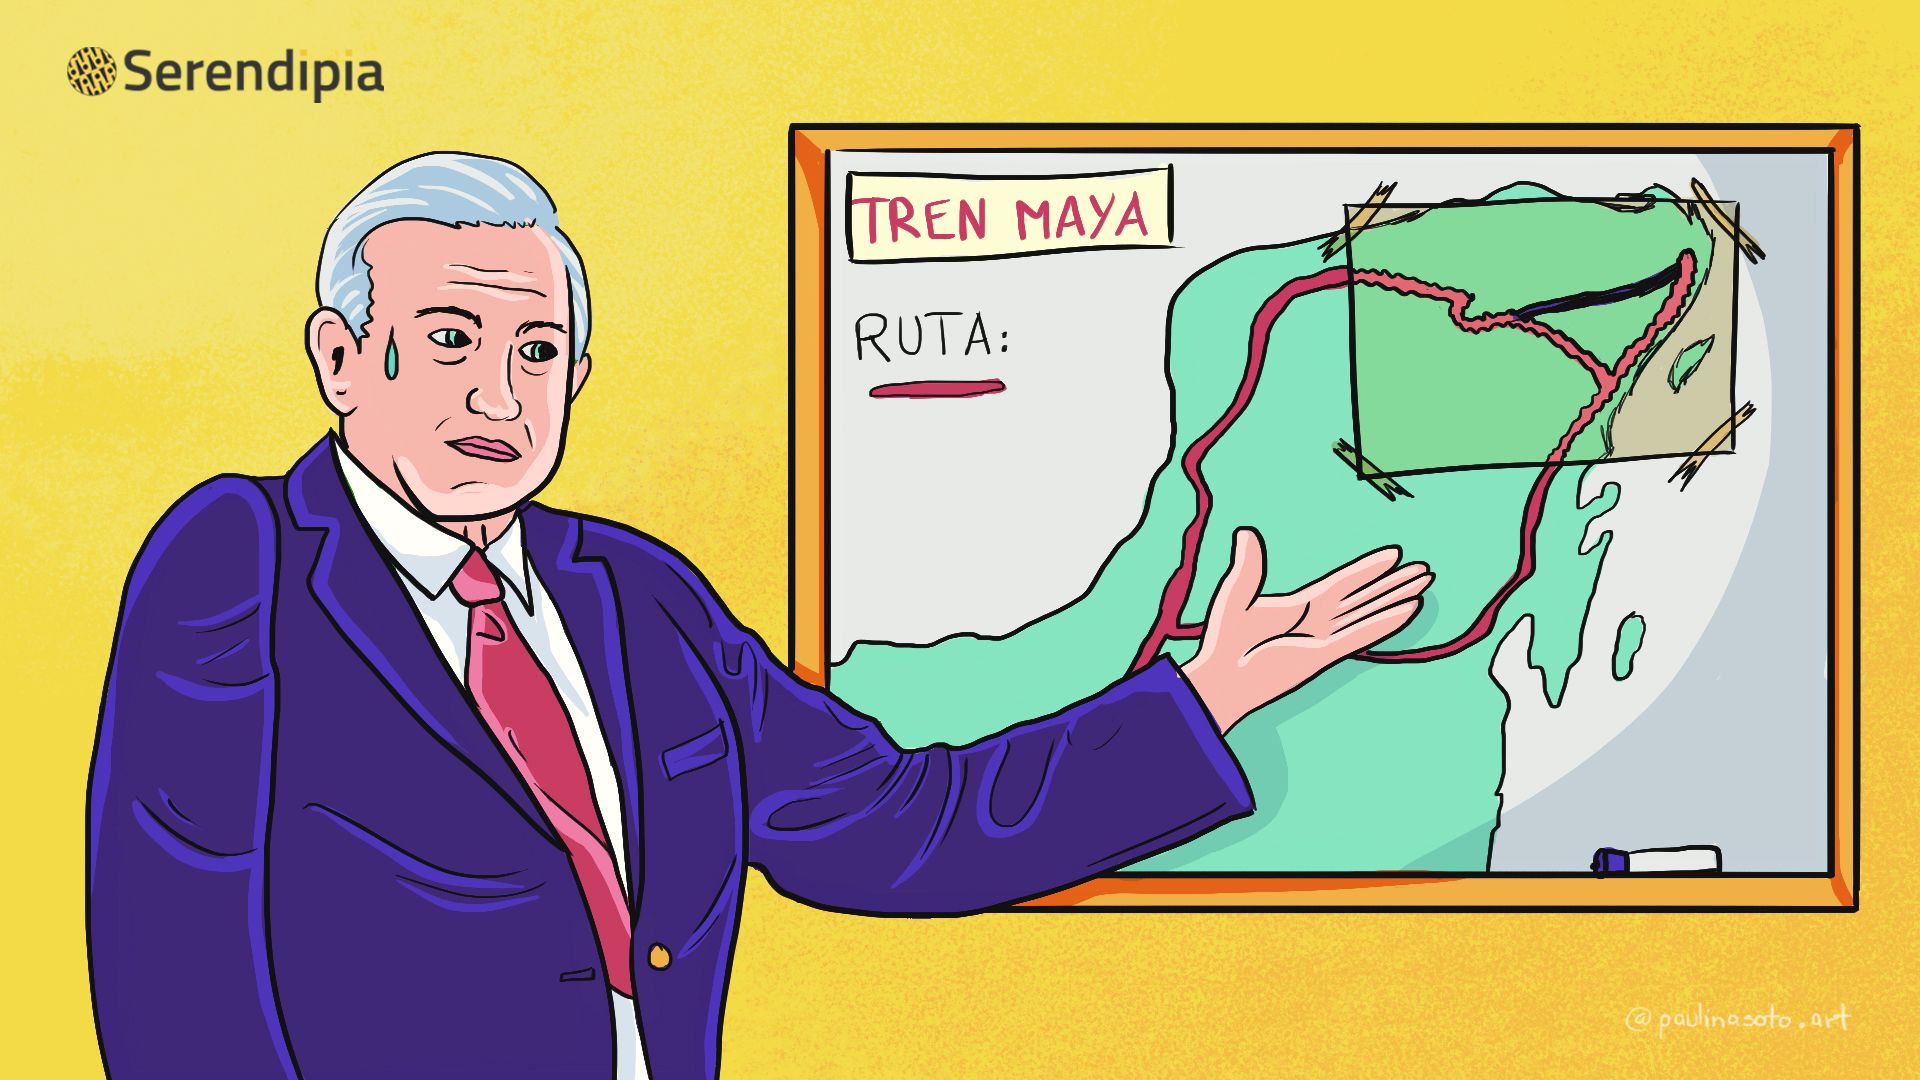 tren maya obra de seguridad nacional